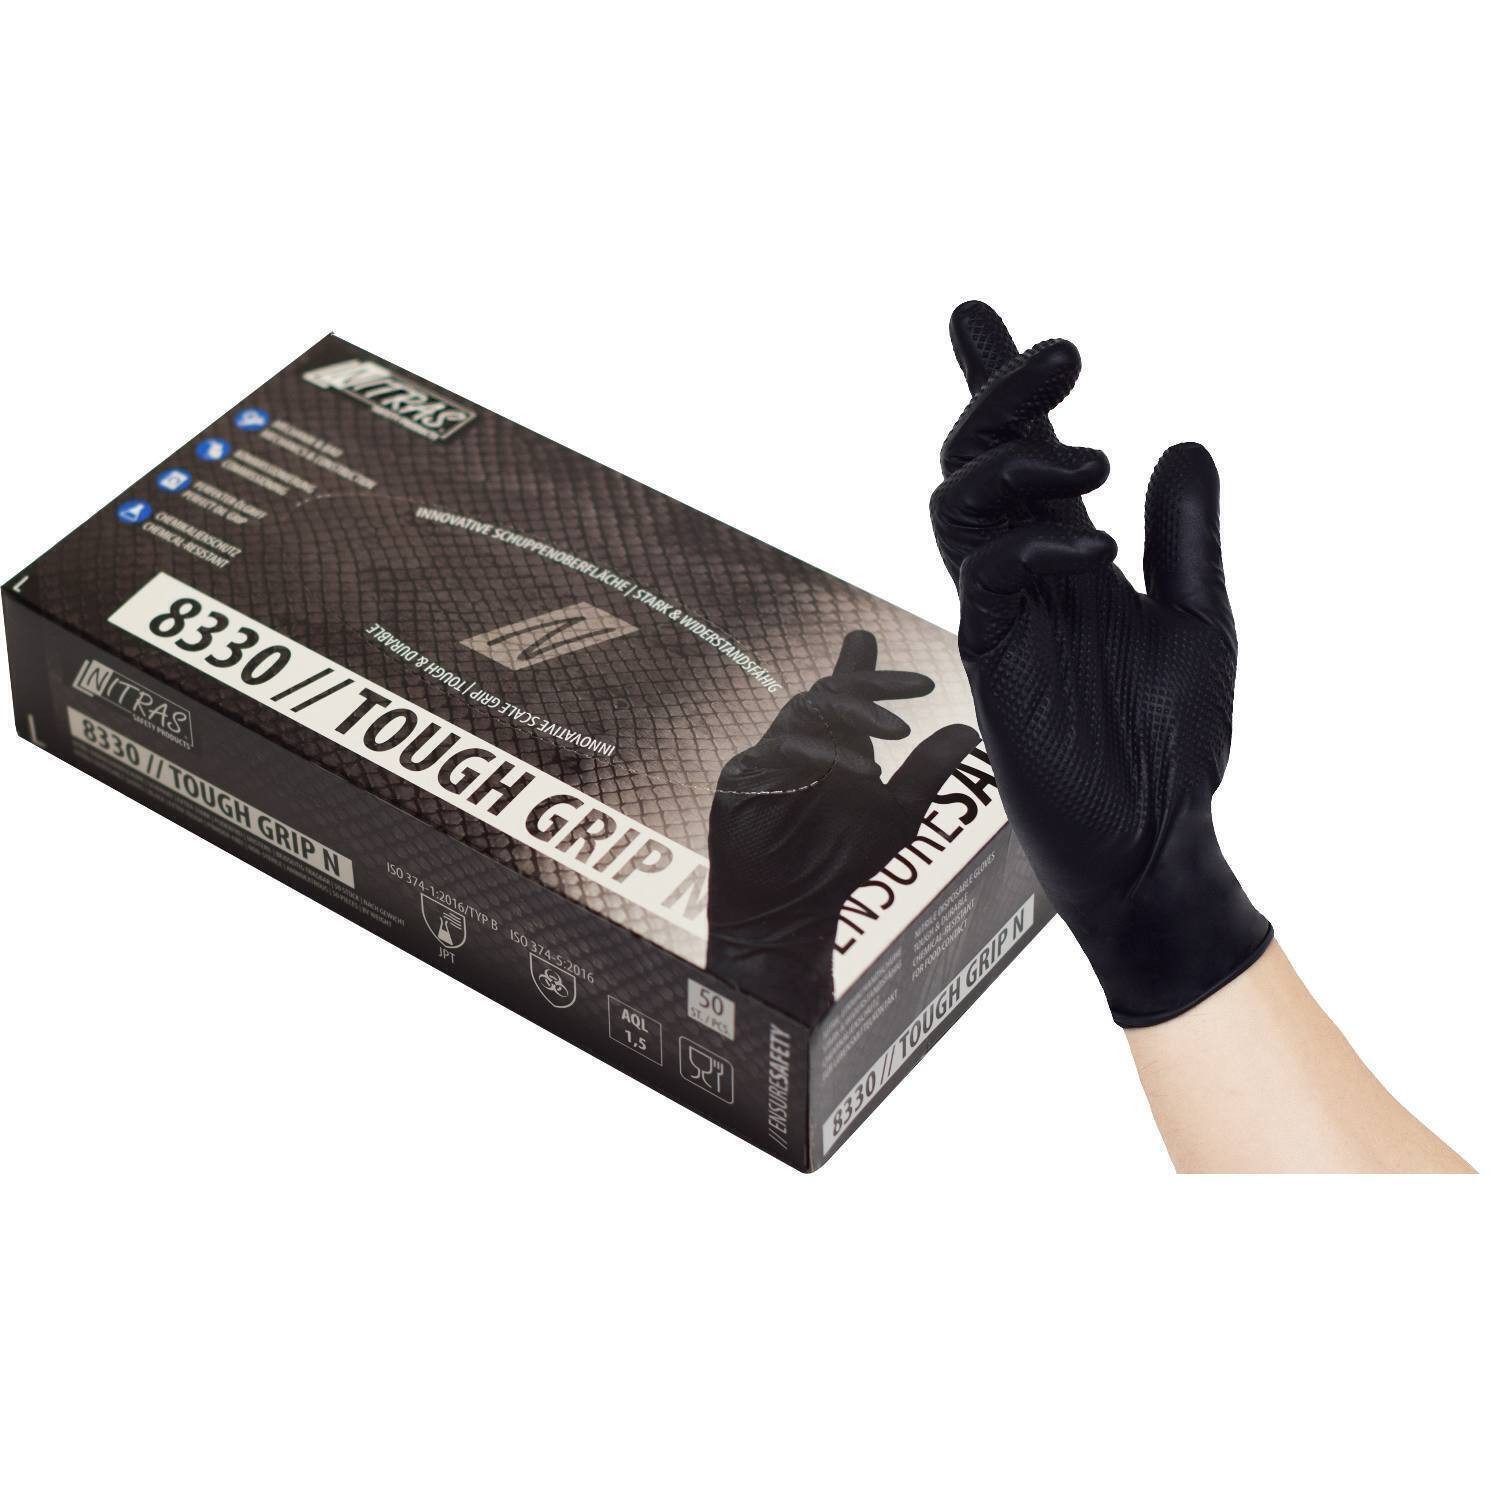 Nitras Einweghandschuhe 8330 Einmalhandschuh Nitril Touch Grip schwarz (Box je 50 Stück, Gr S-XXL) ölbeständig/ extra Grip